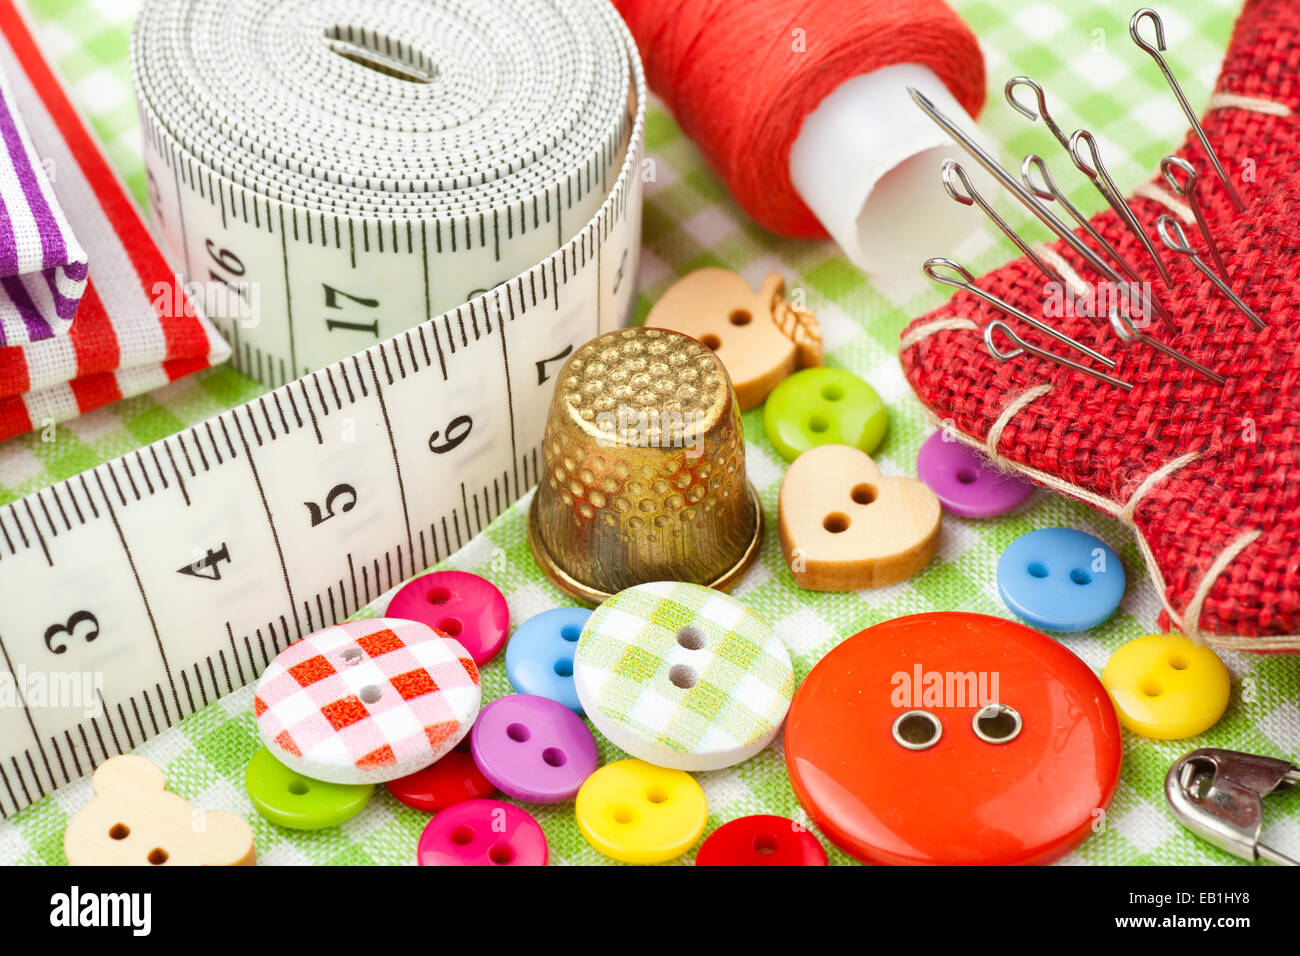 Elementi di cucitura: pulsanti, tessuti colorati, nastro di misurazione, pin cuscino, ditale, rocchetto di filo Foto Stock